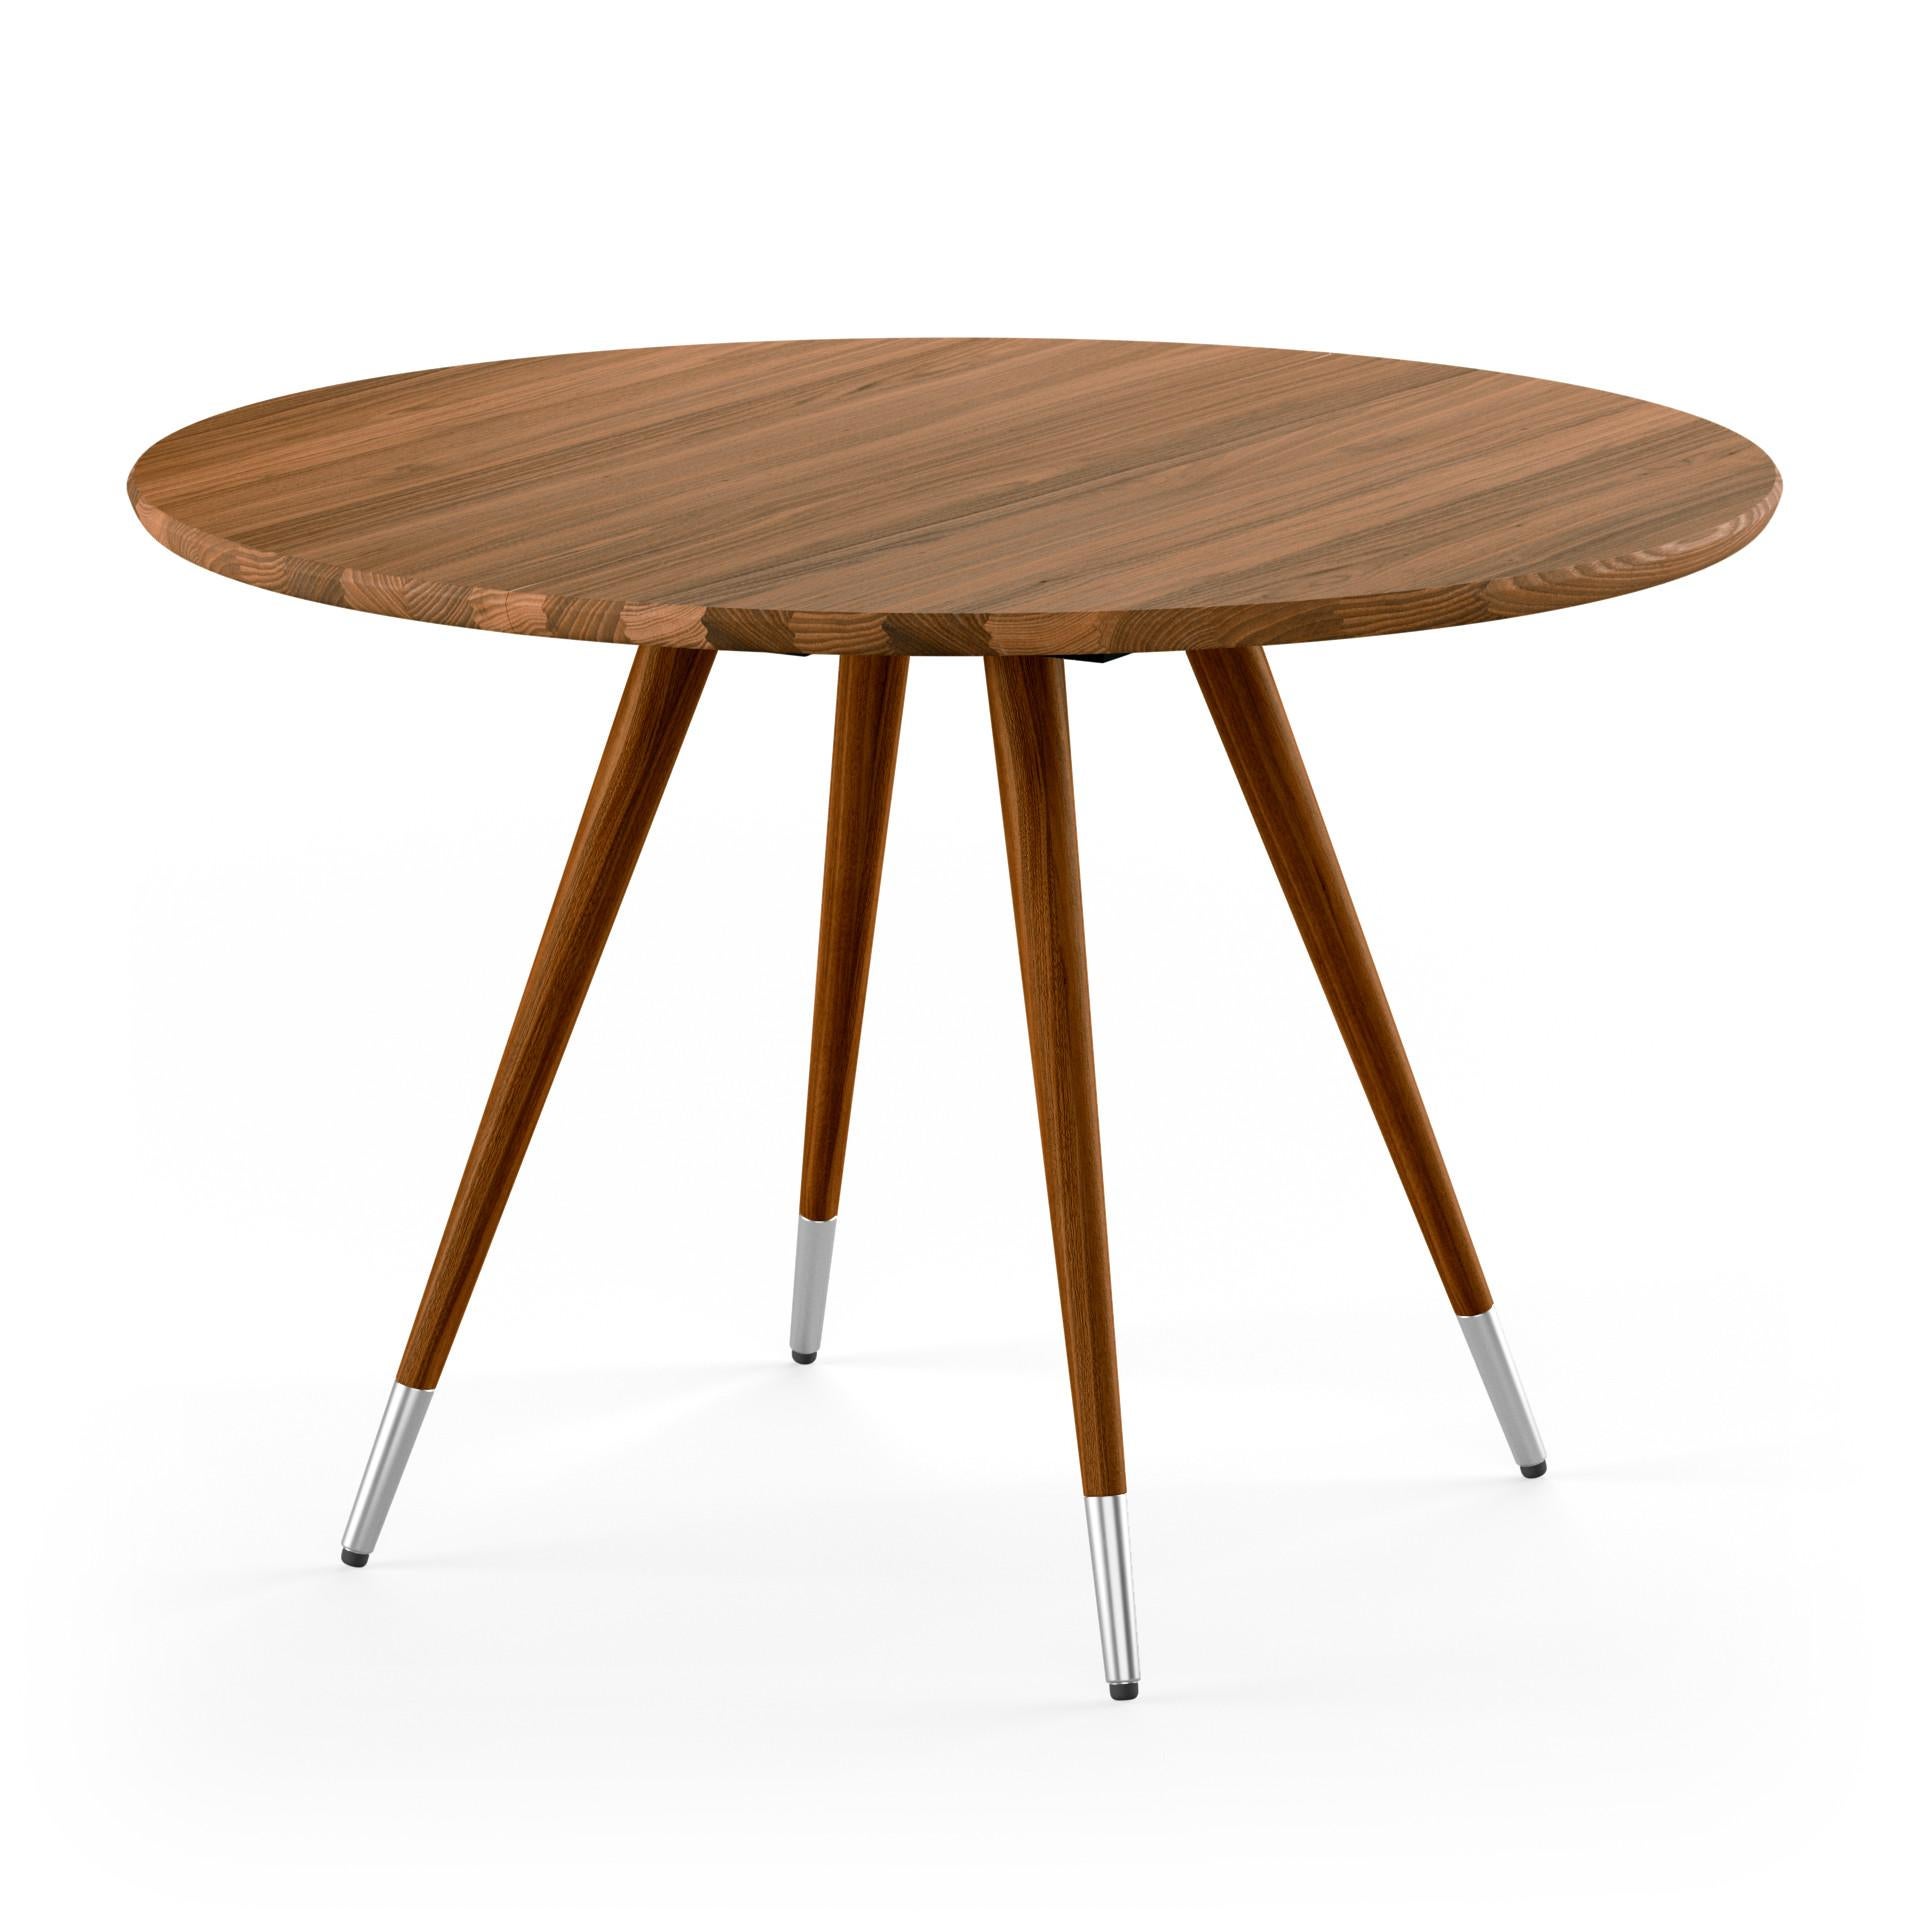 Danish GM3900 Edge Round Table, Walnut - Design by Nissen & Gehl MDD For Sale